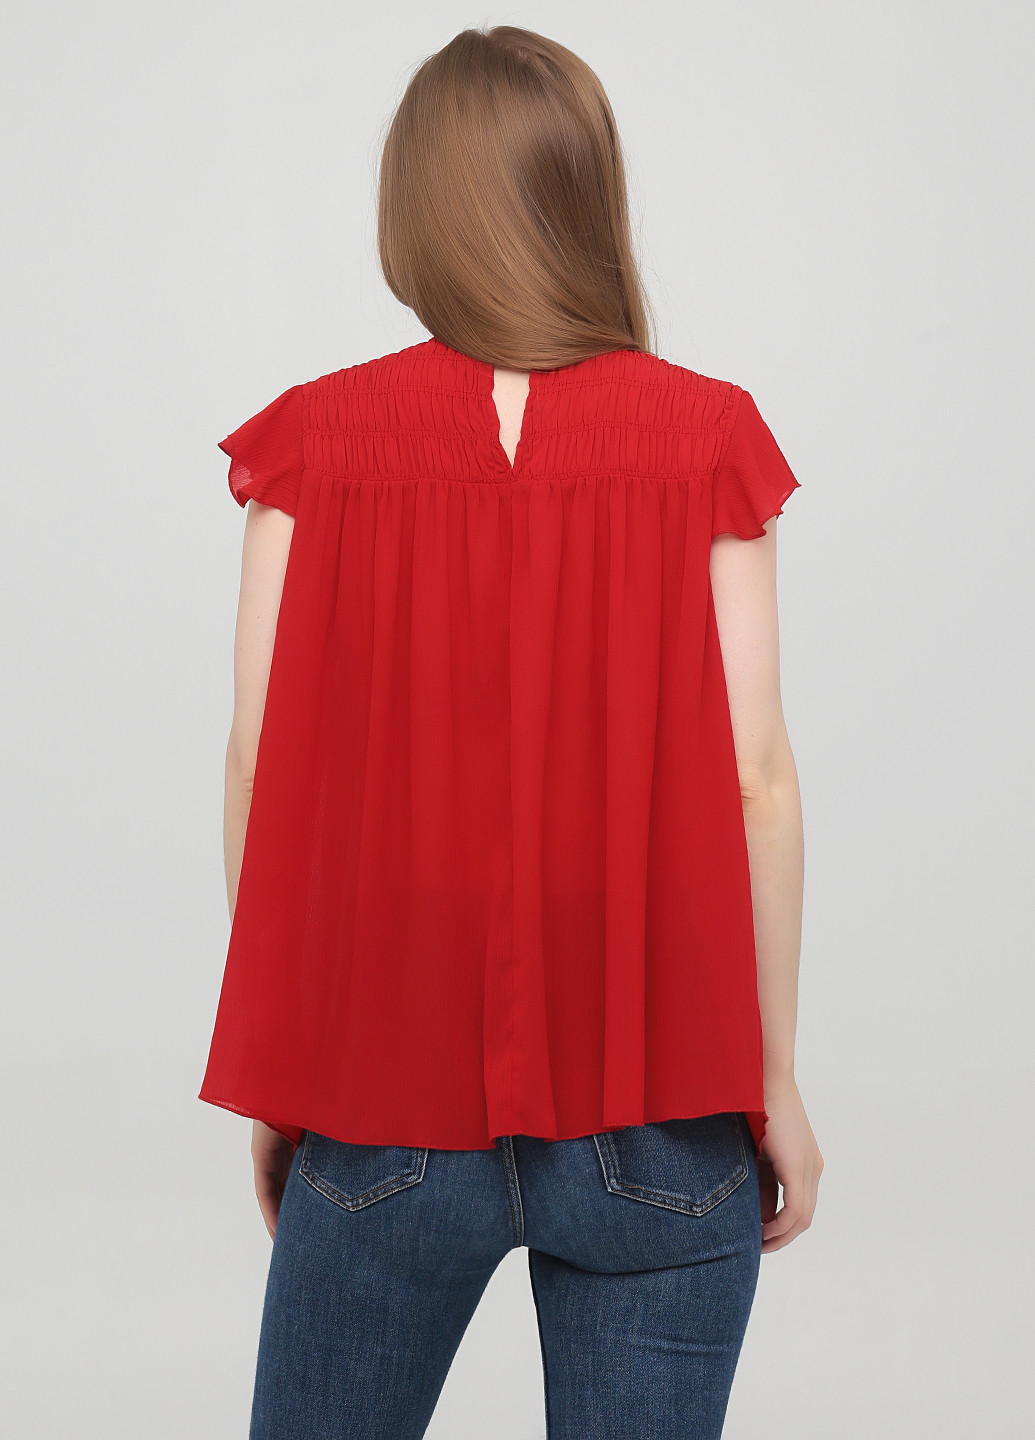 Червона літня блузка Zara